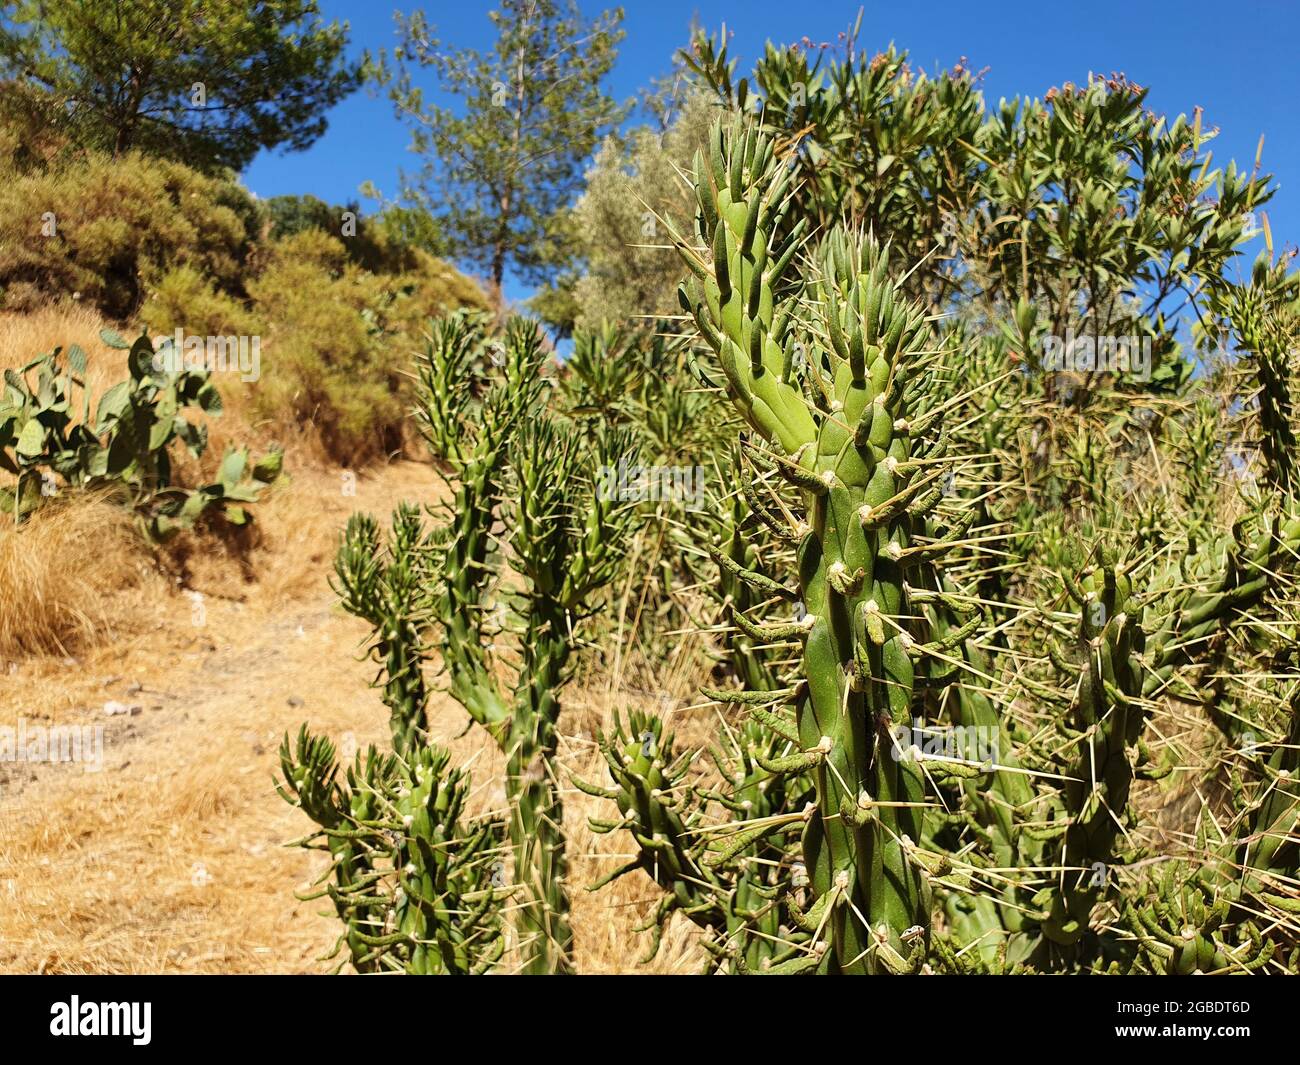 Cactus che cresce in un paese con un clima caldo. Piante belle, grandi e spinose. Foto Stock